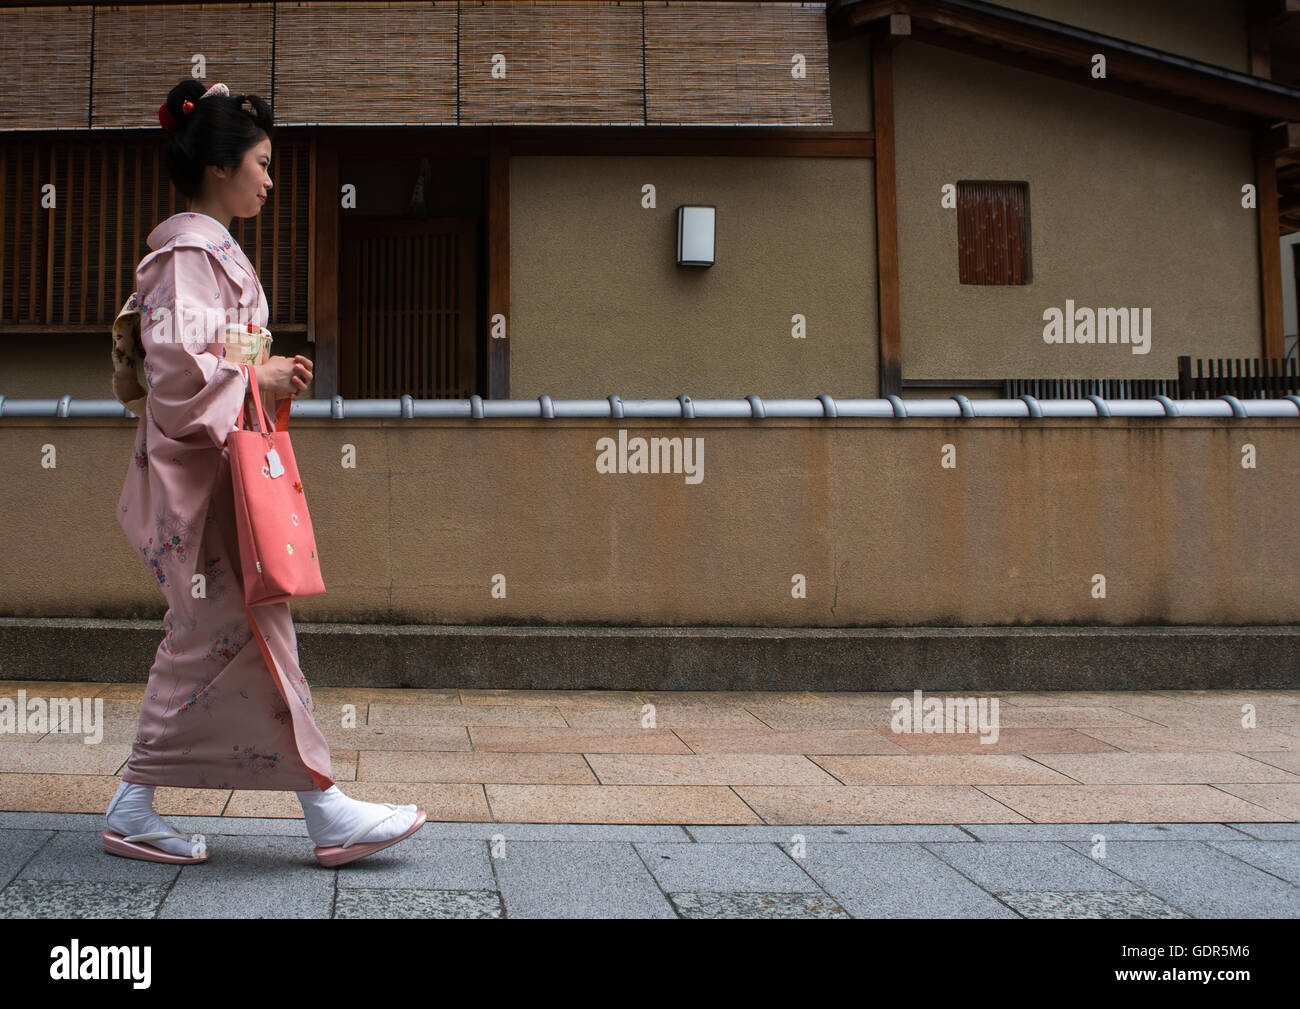 16 anni chiamato maiko chikasaya camminando per le strade di gion, la regione di Kansai, Kyoto, Giappone Foto Stock